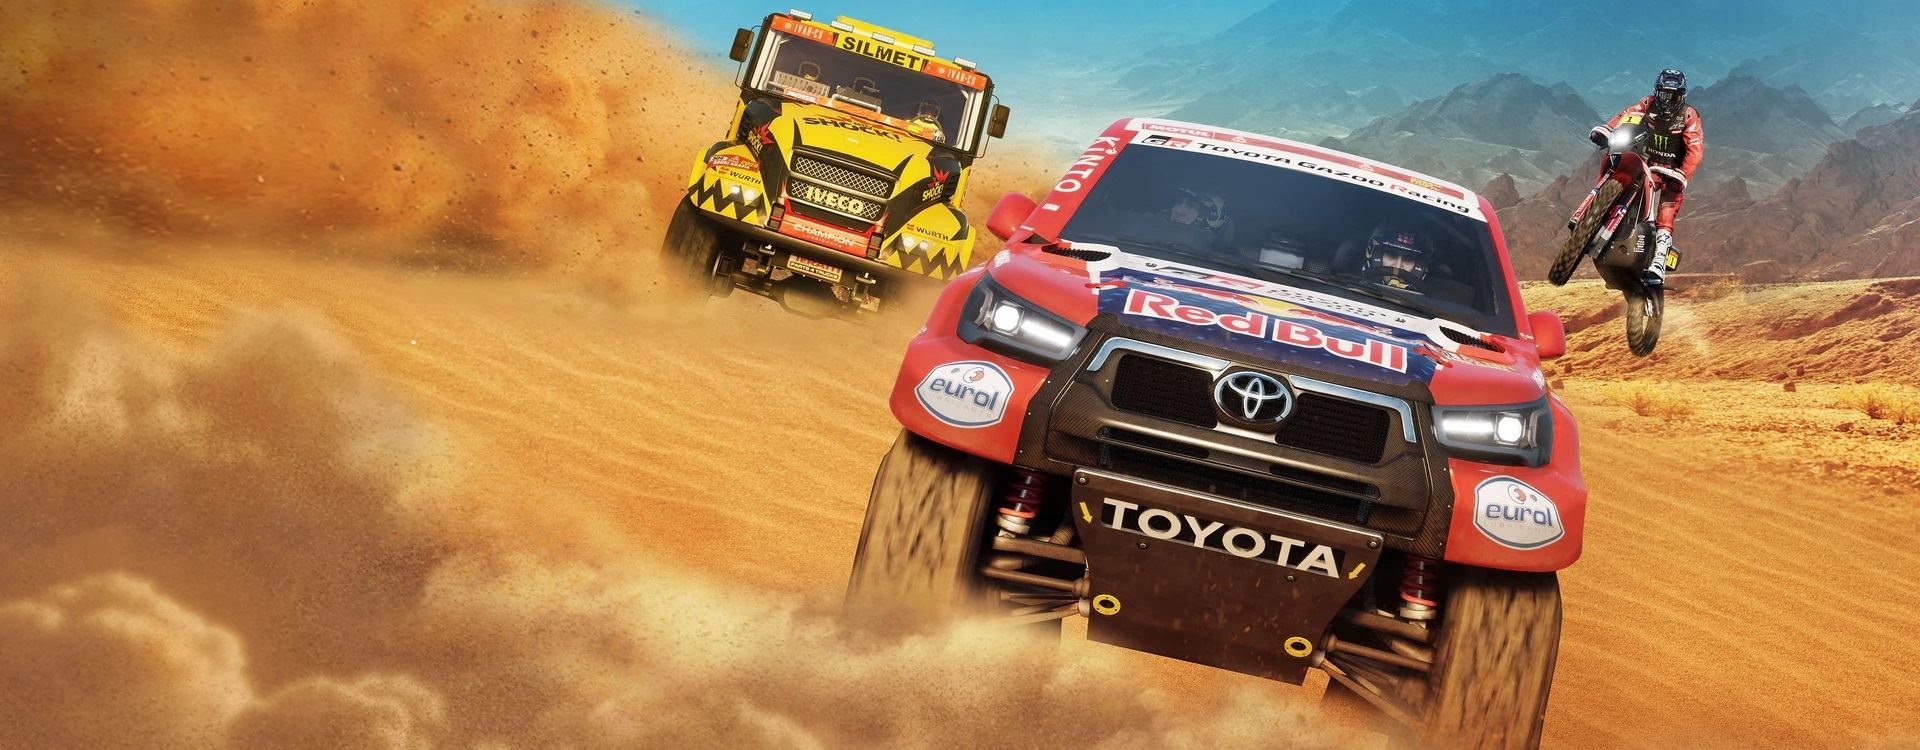 Dakar Desert Rally; Wallpaper: Cover